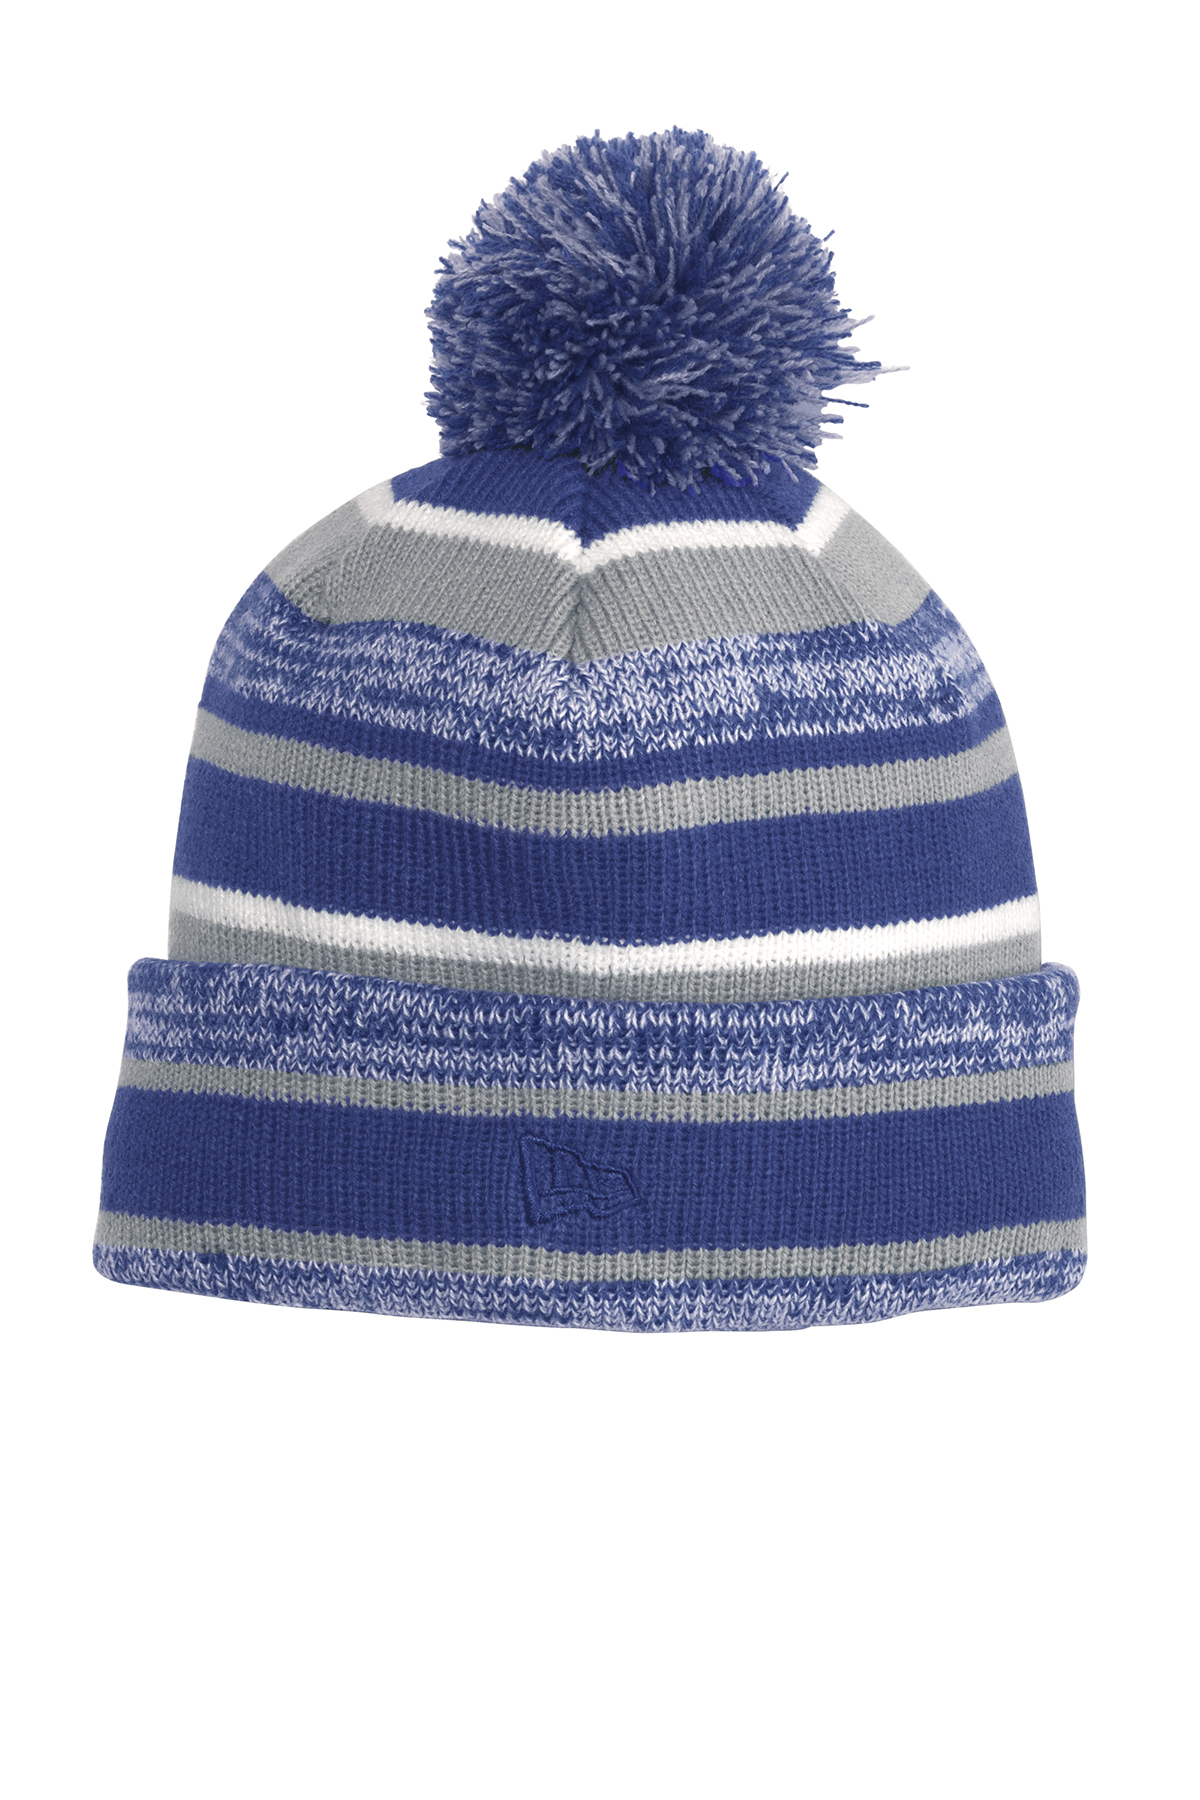 NEW ERA 2018-2019 SPORT KNIT On field Sideline Beanie Winter Fleece Pom Cap Hat 